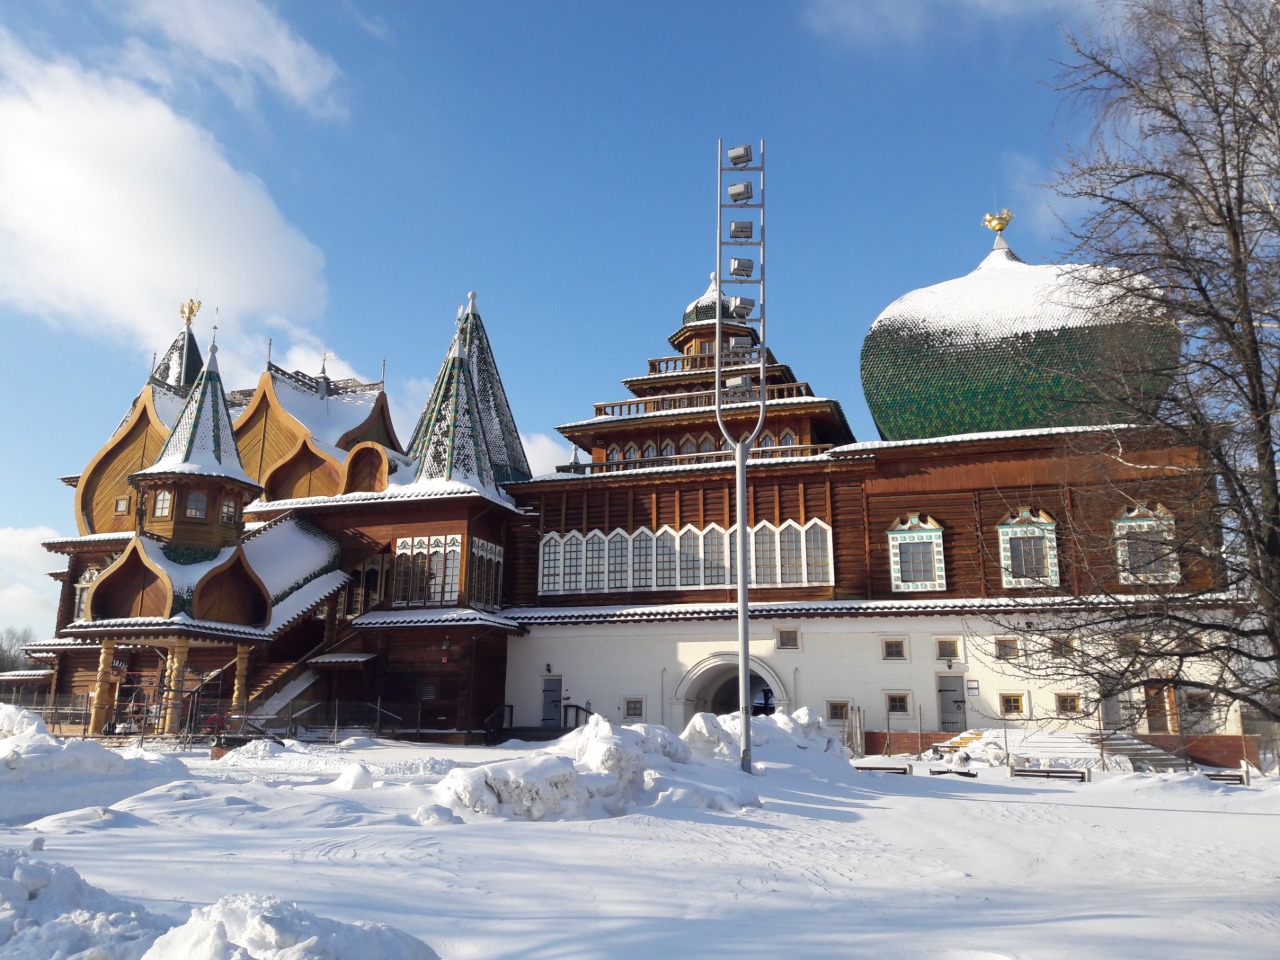 Дворец царя Алексея Михайловича в Коломенском | Цена 6900₽, отзывы, описание экскурсии